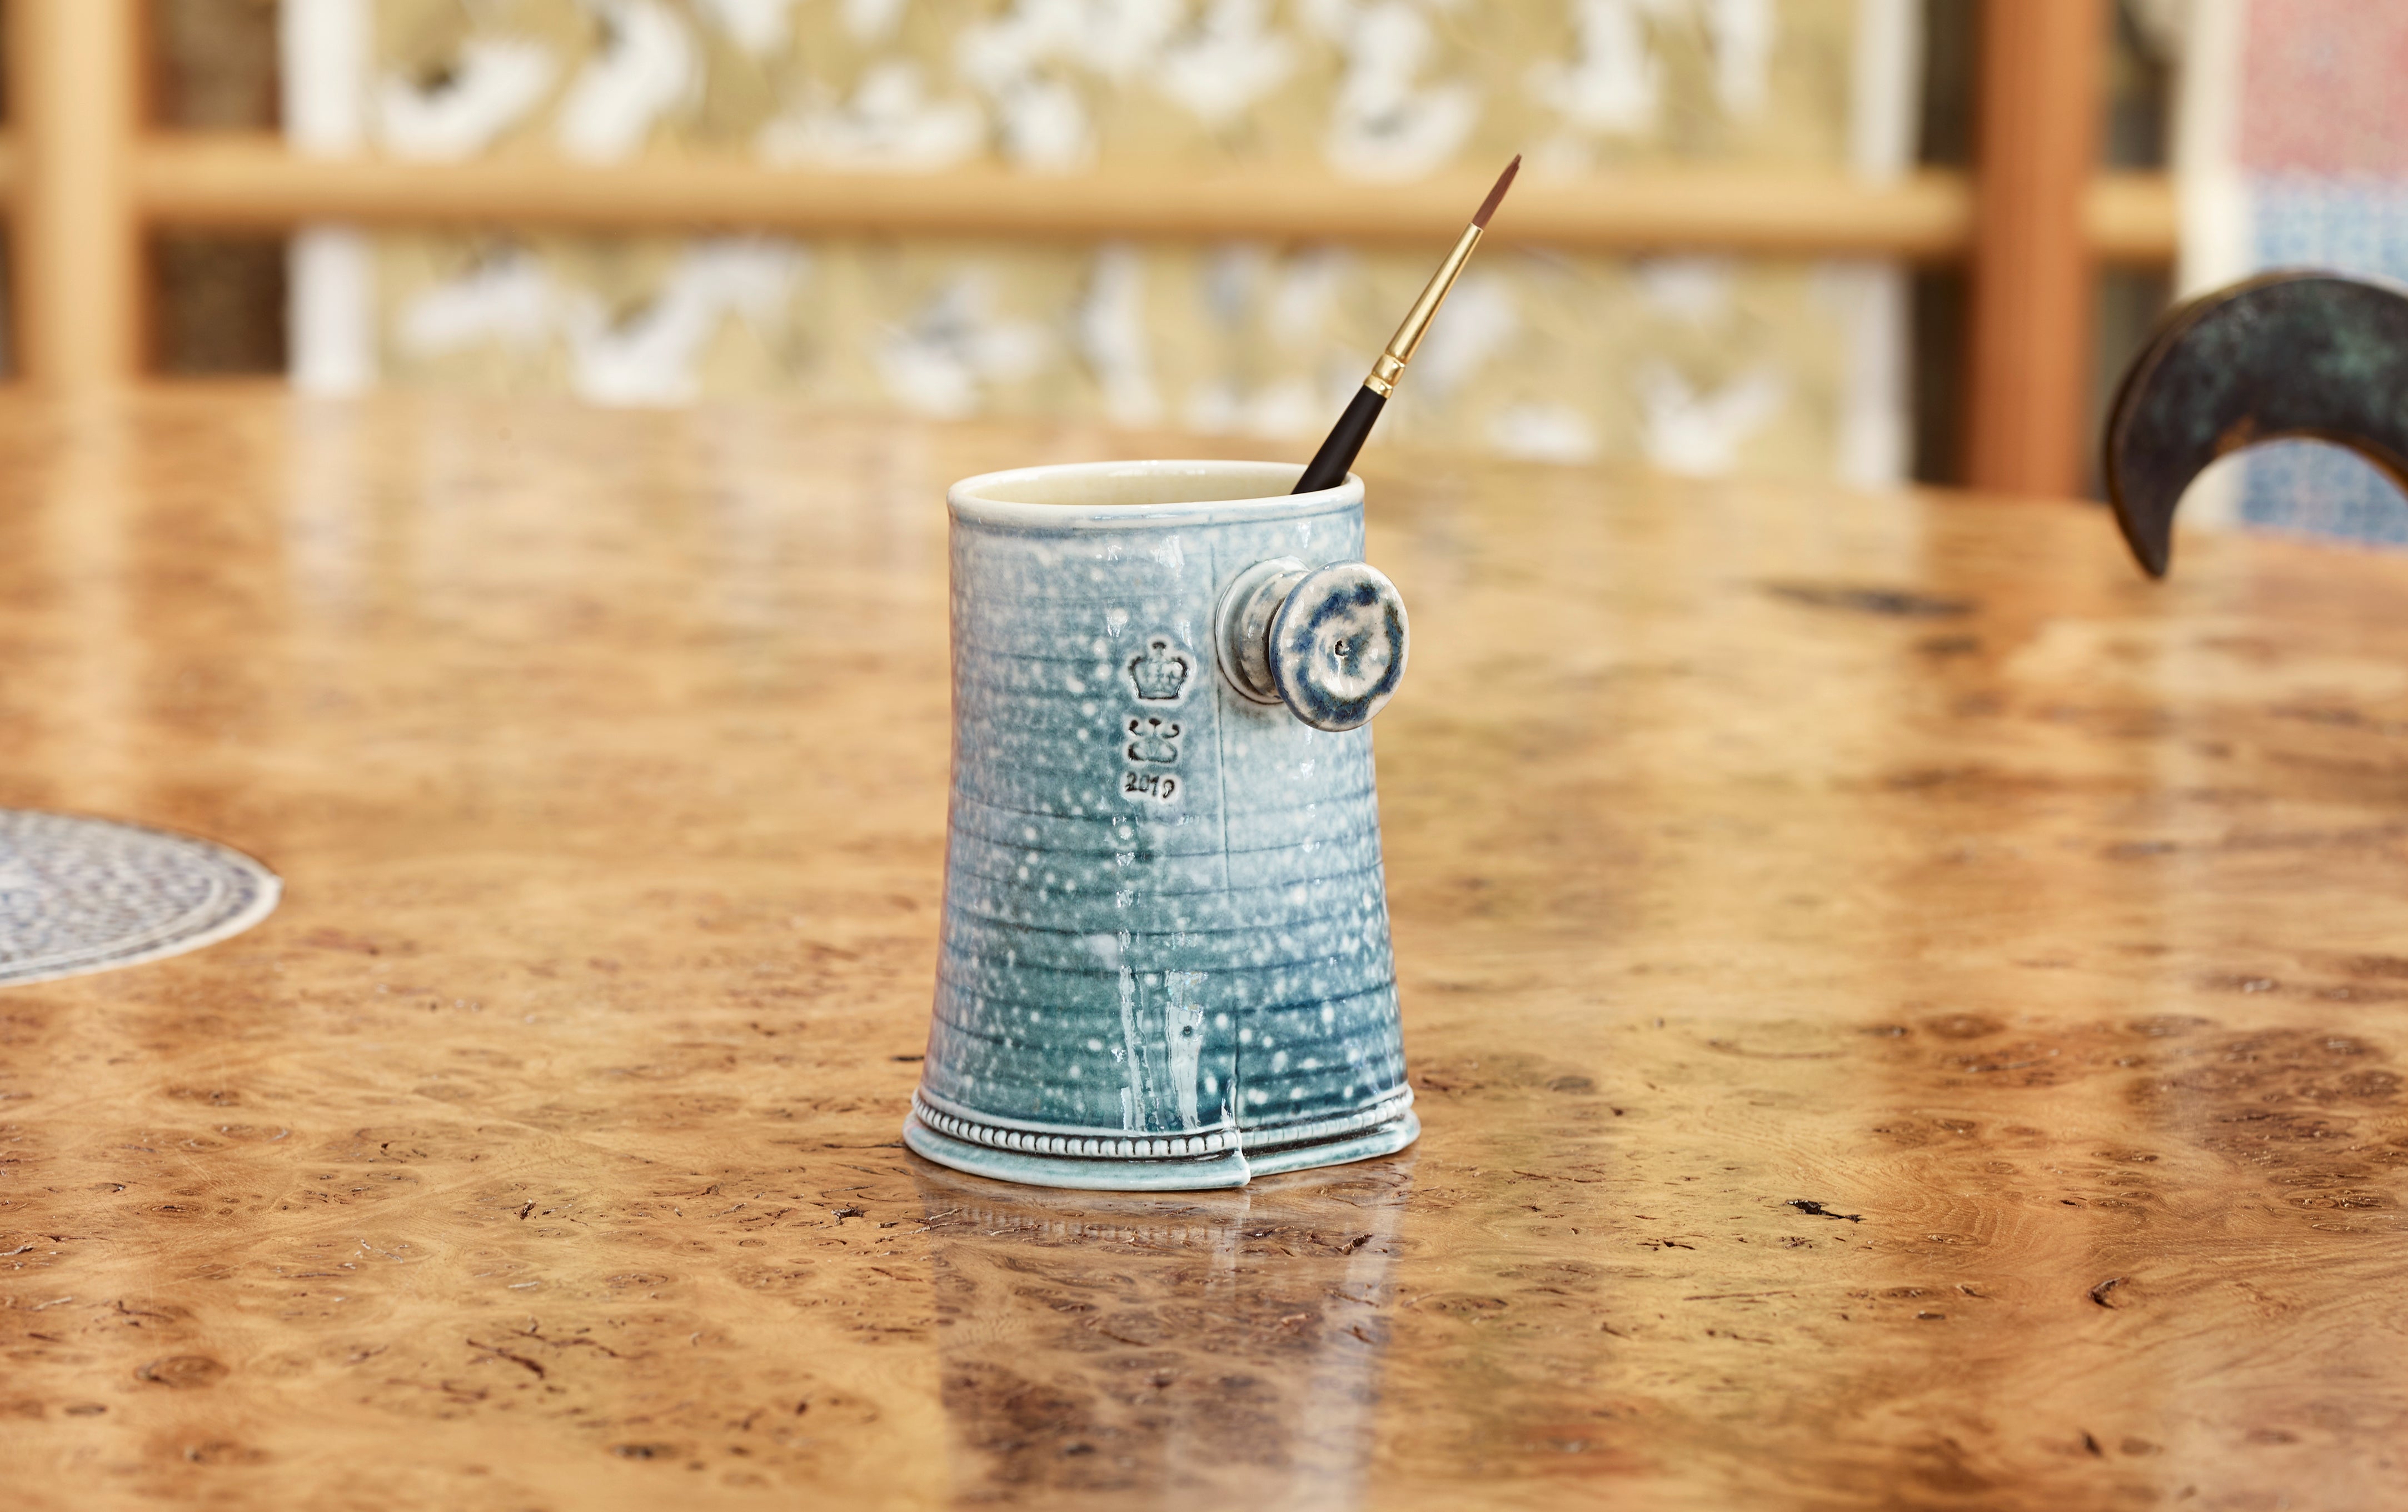 Steve Harrison Ceramic Desk Cup, No.108 Blue Porcelain with Side Knob